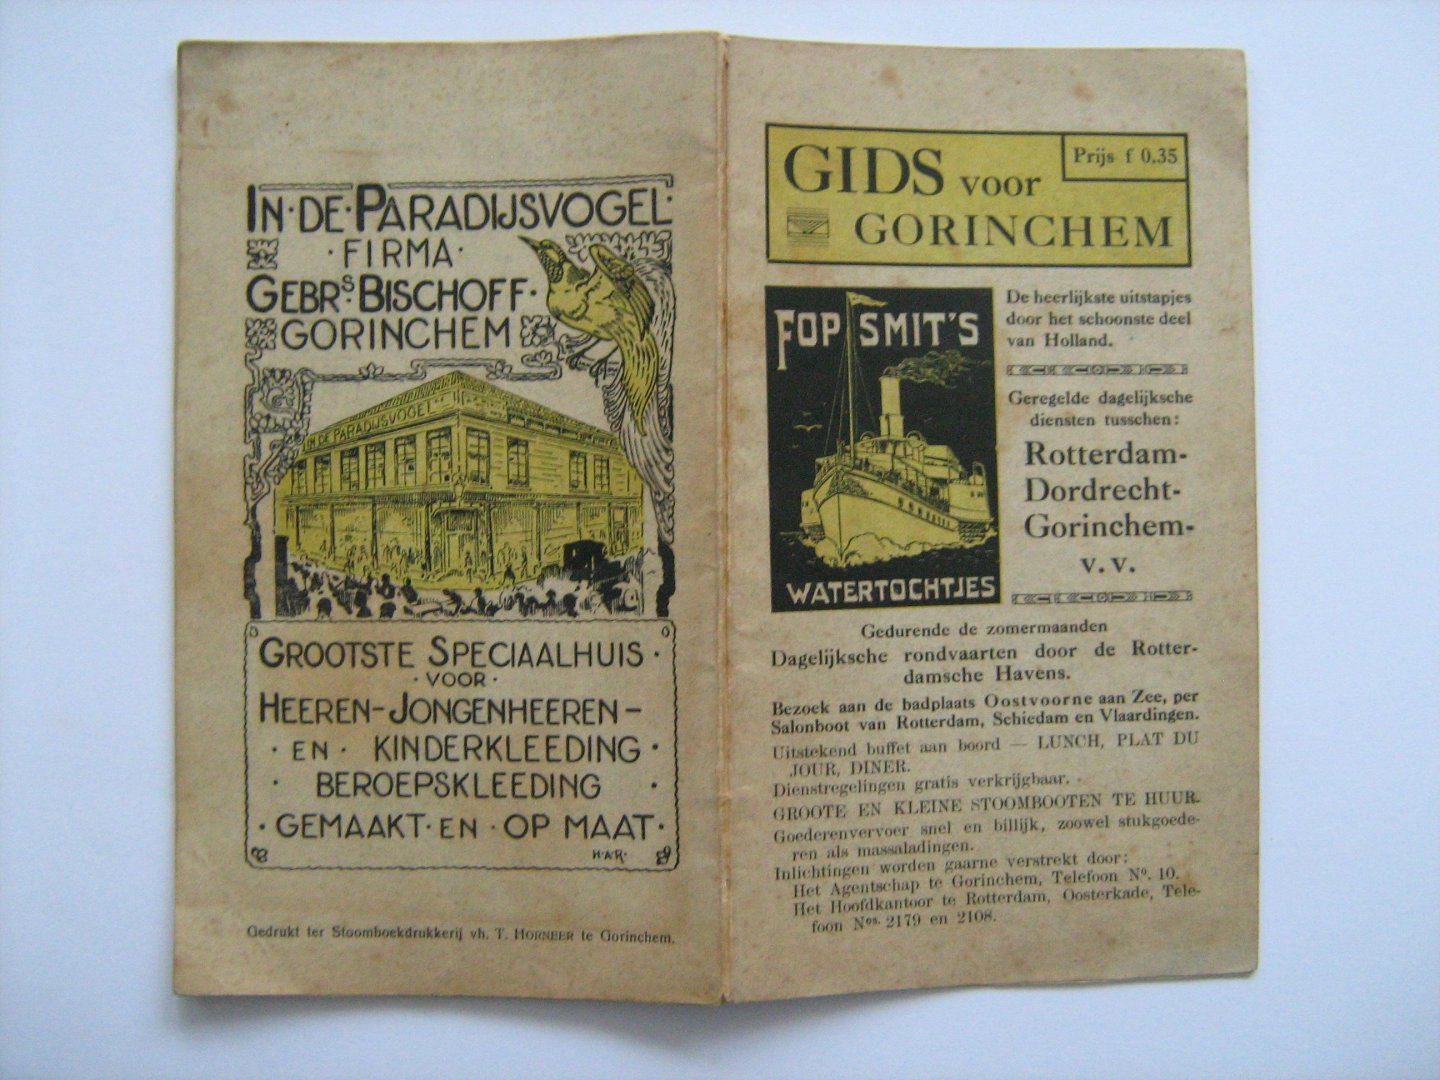  - GIDS voor GORINCHEM Gorkum (plm 1925)